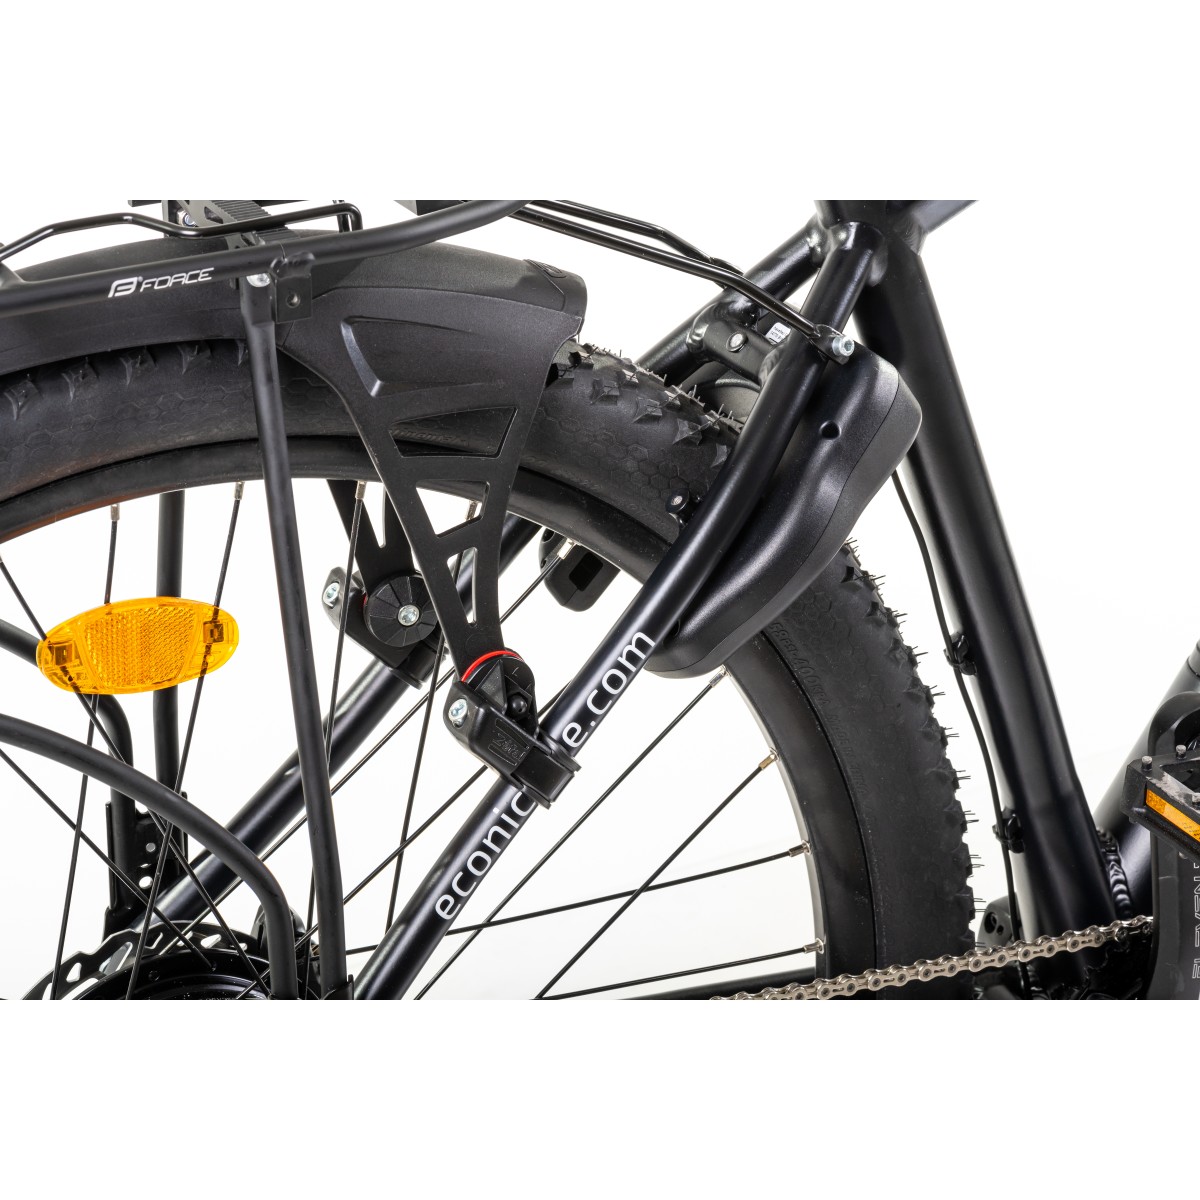 Електрическо колело SMART CROSS COUNTRY  ECONIC ONE - изглед 9